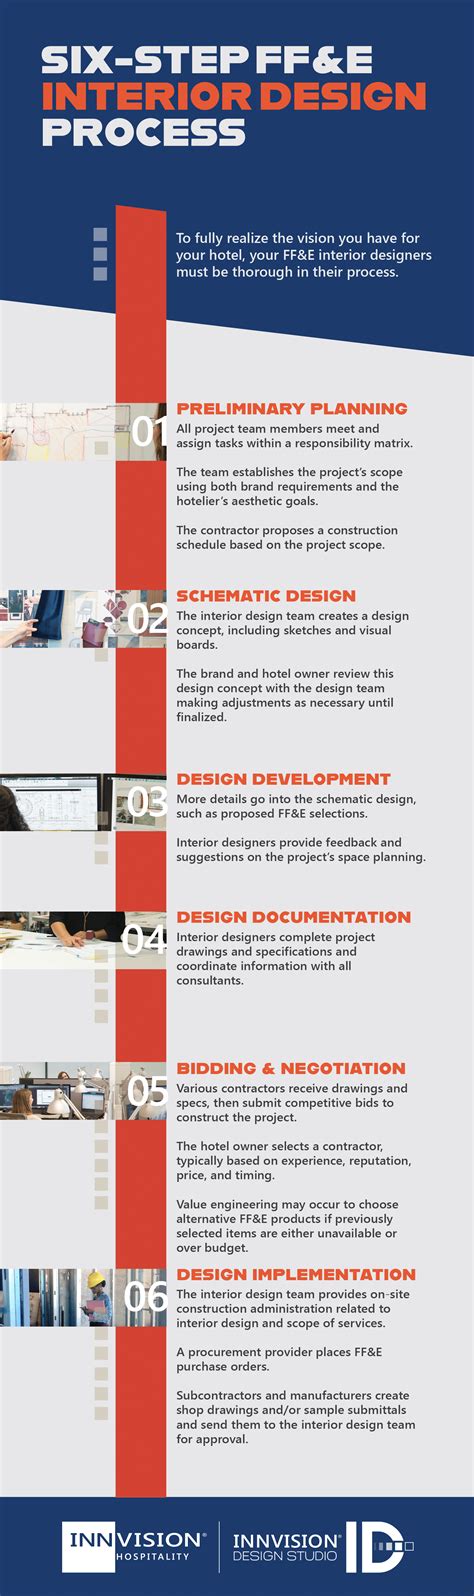 46 Design Process Interior Design Hd Png